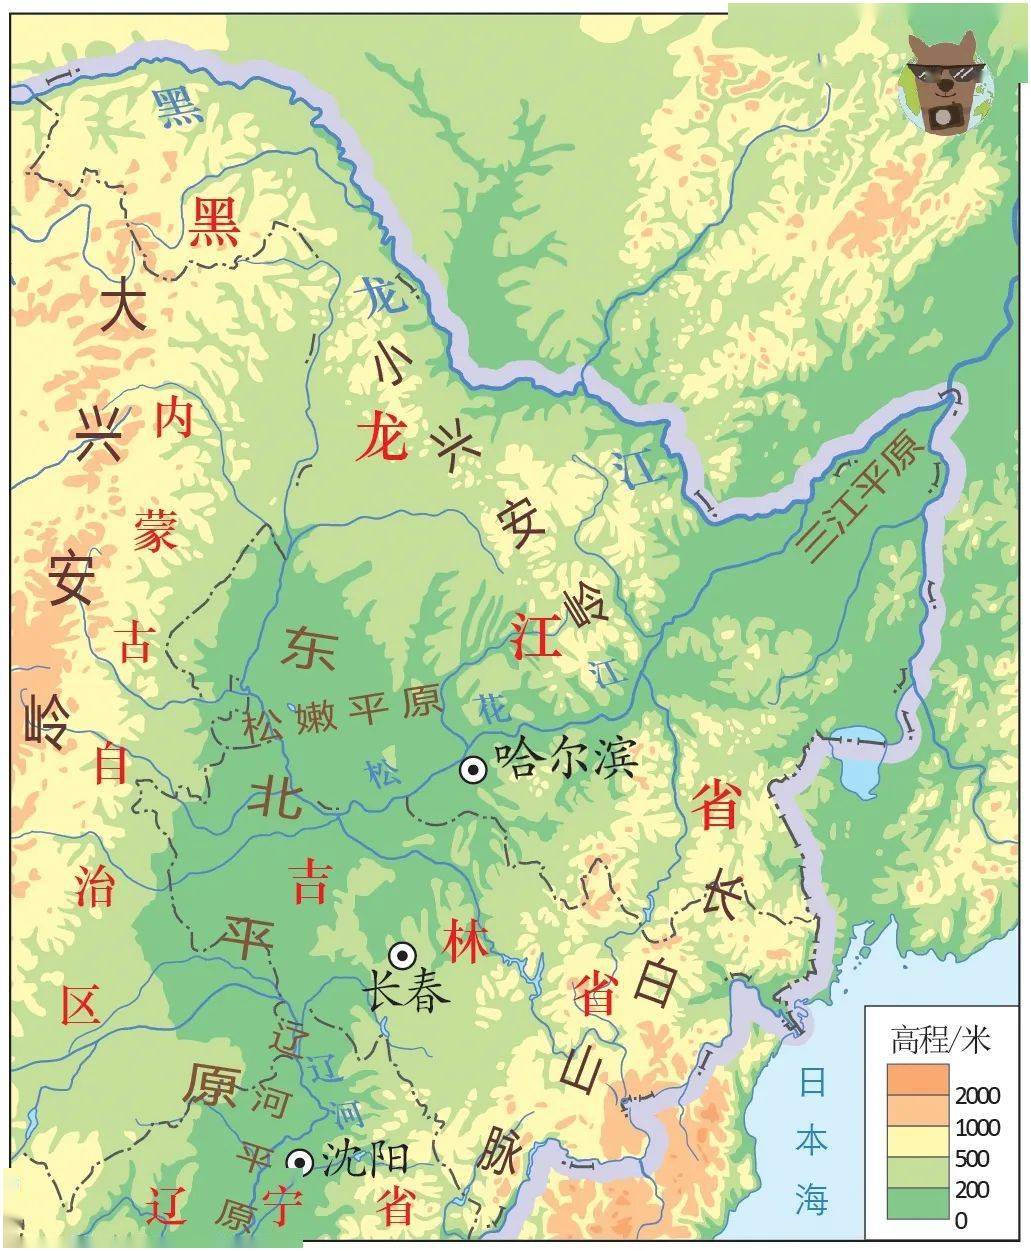 黑龙江行政区划那么黑龙江省各城市等级划分又是怎样的呢？